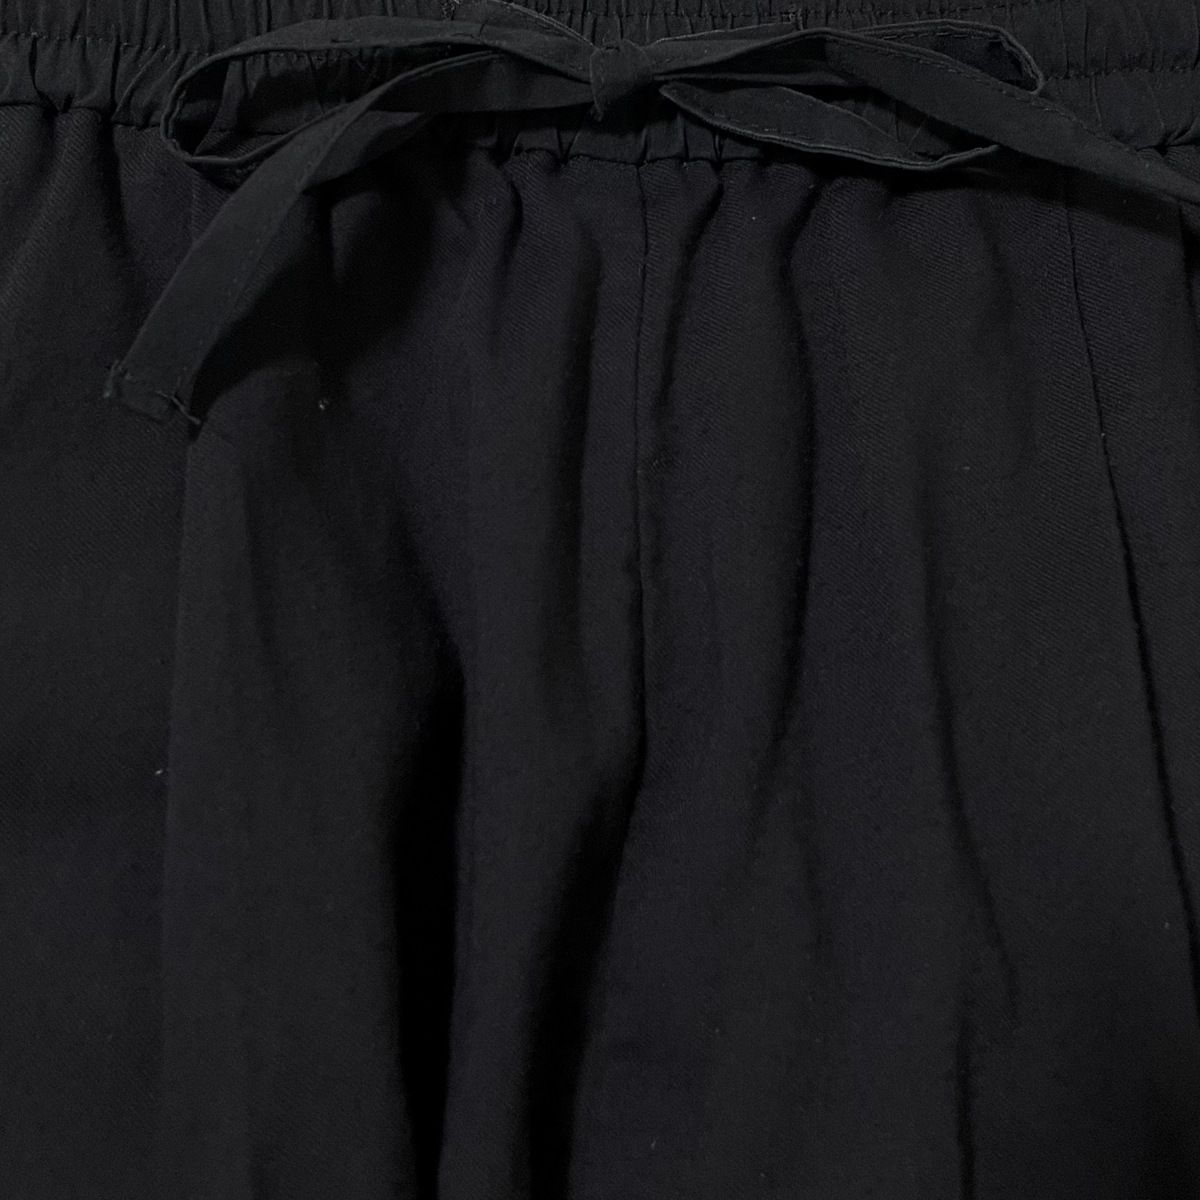 yori(ヨリ) パンツ サイズ36 S レディース - 黒 クロップド(半端丈)/ウエストゴム